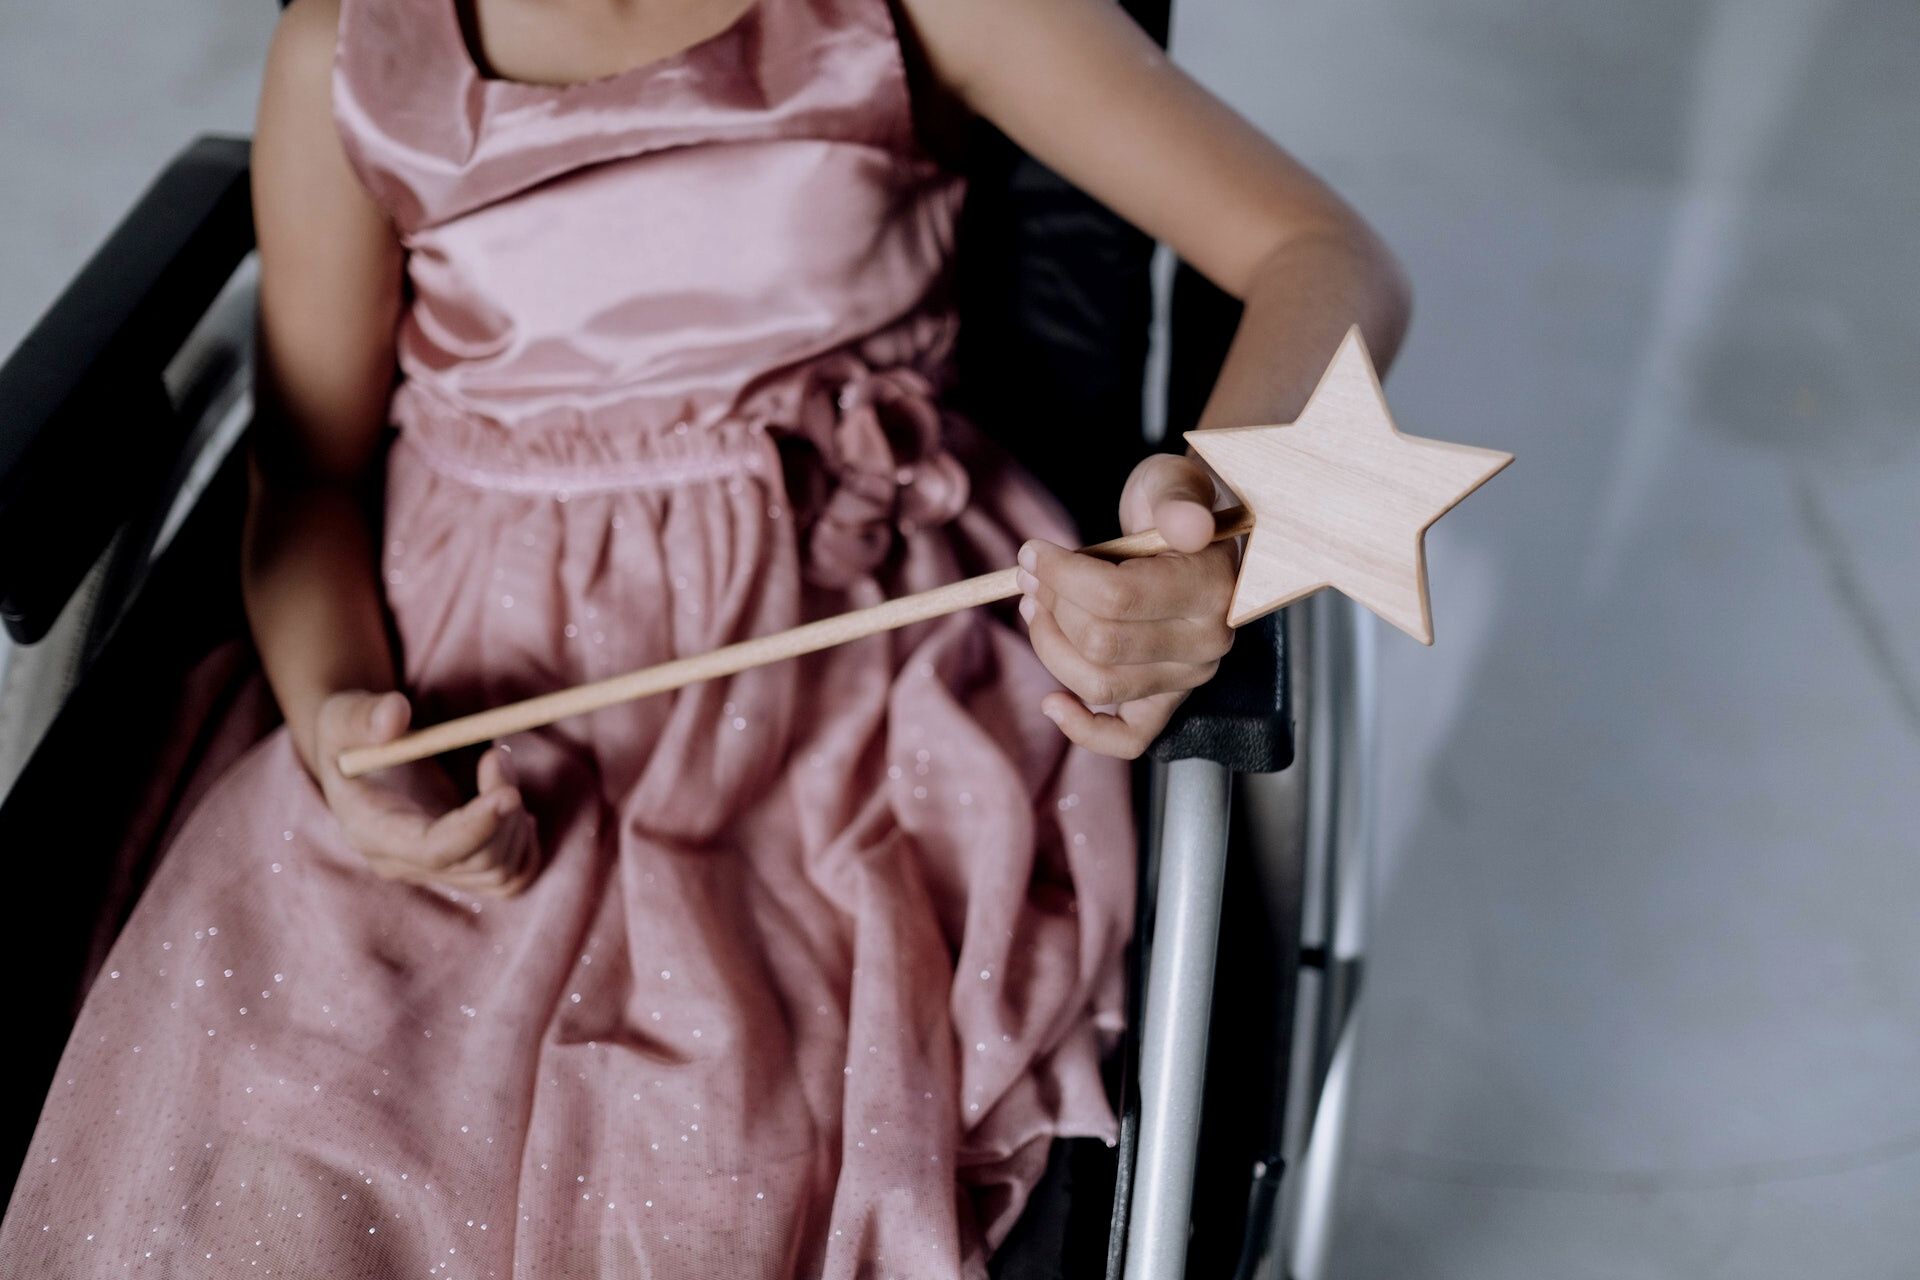 Wie begegnen wir Kindern mit Behinderung und ihren Familien im Alltag? Von Ableismus und Inklusion. Sechs Eltern erzählen. - mal ehrlich